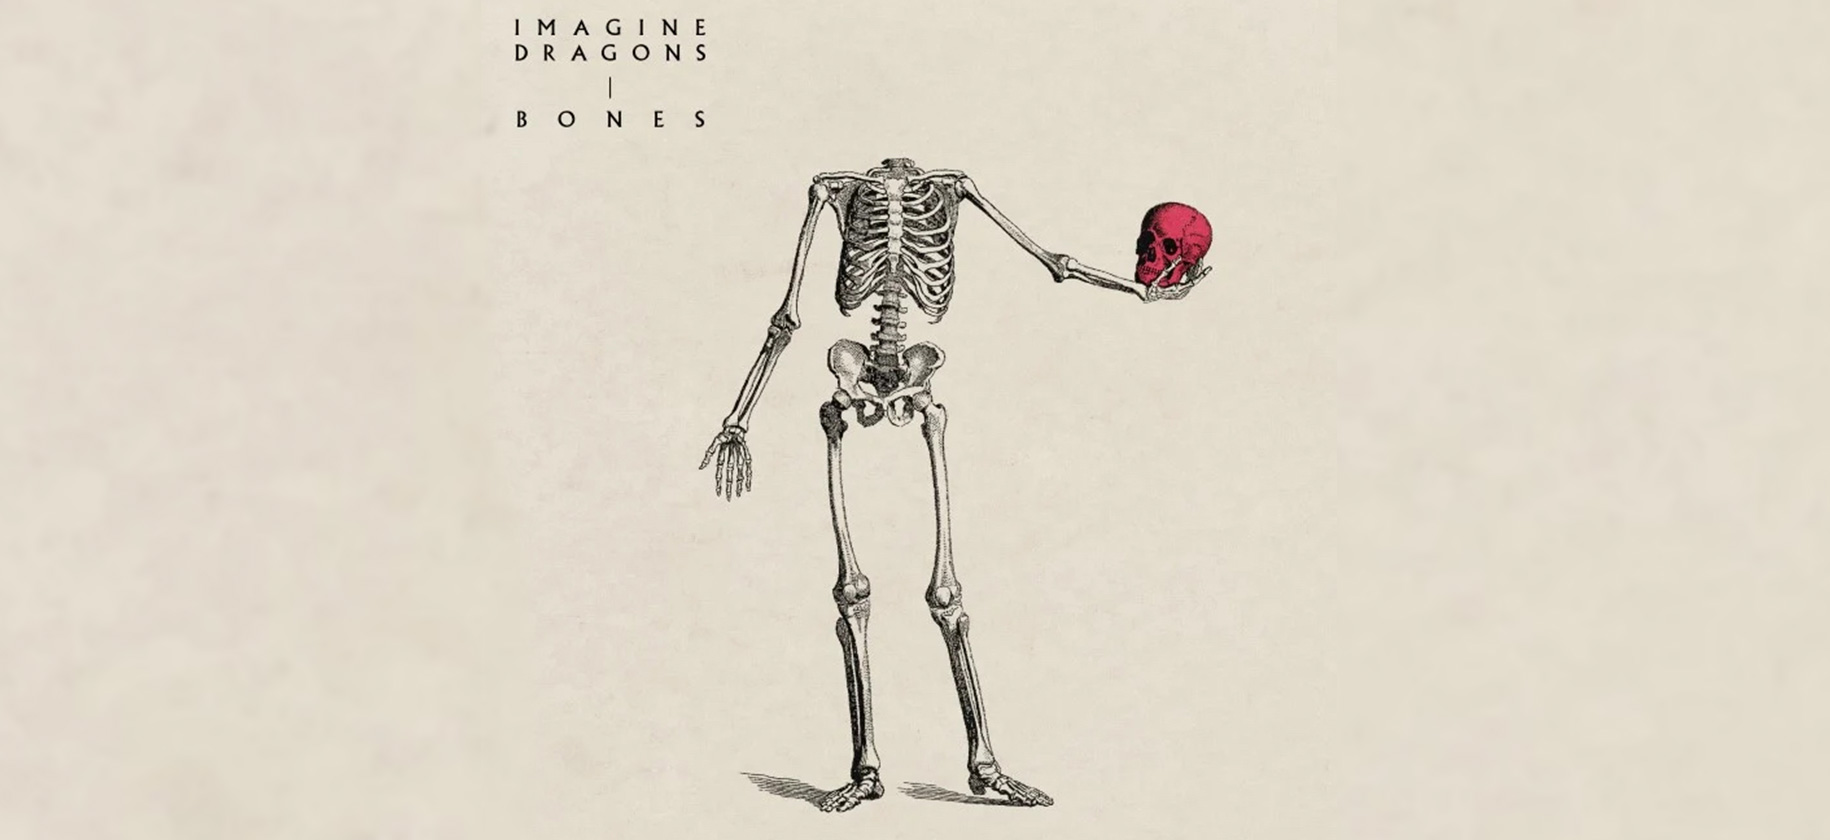 Imagine Dragons Bones Album Cover